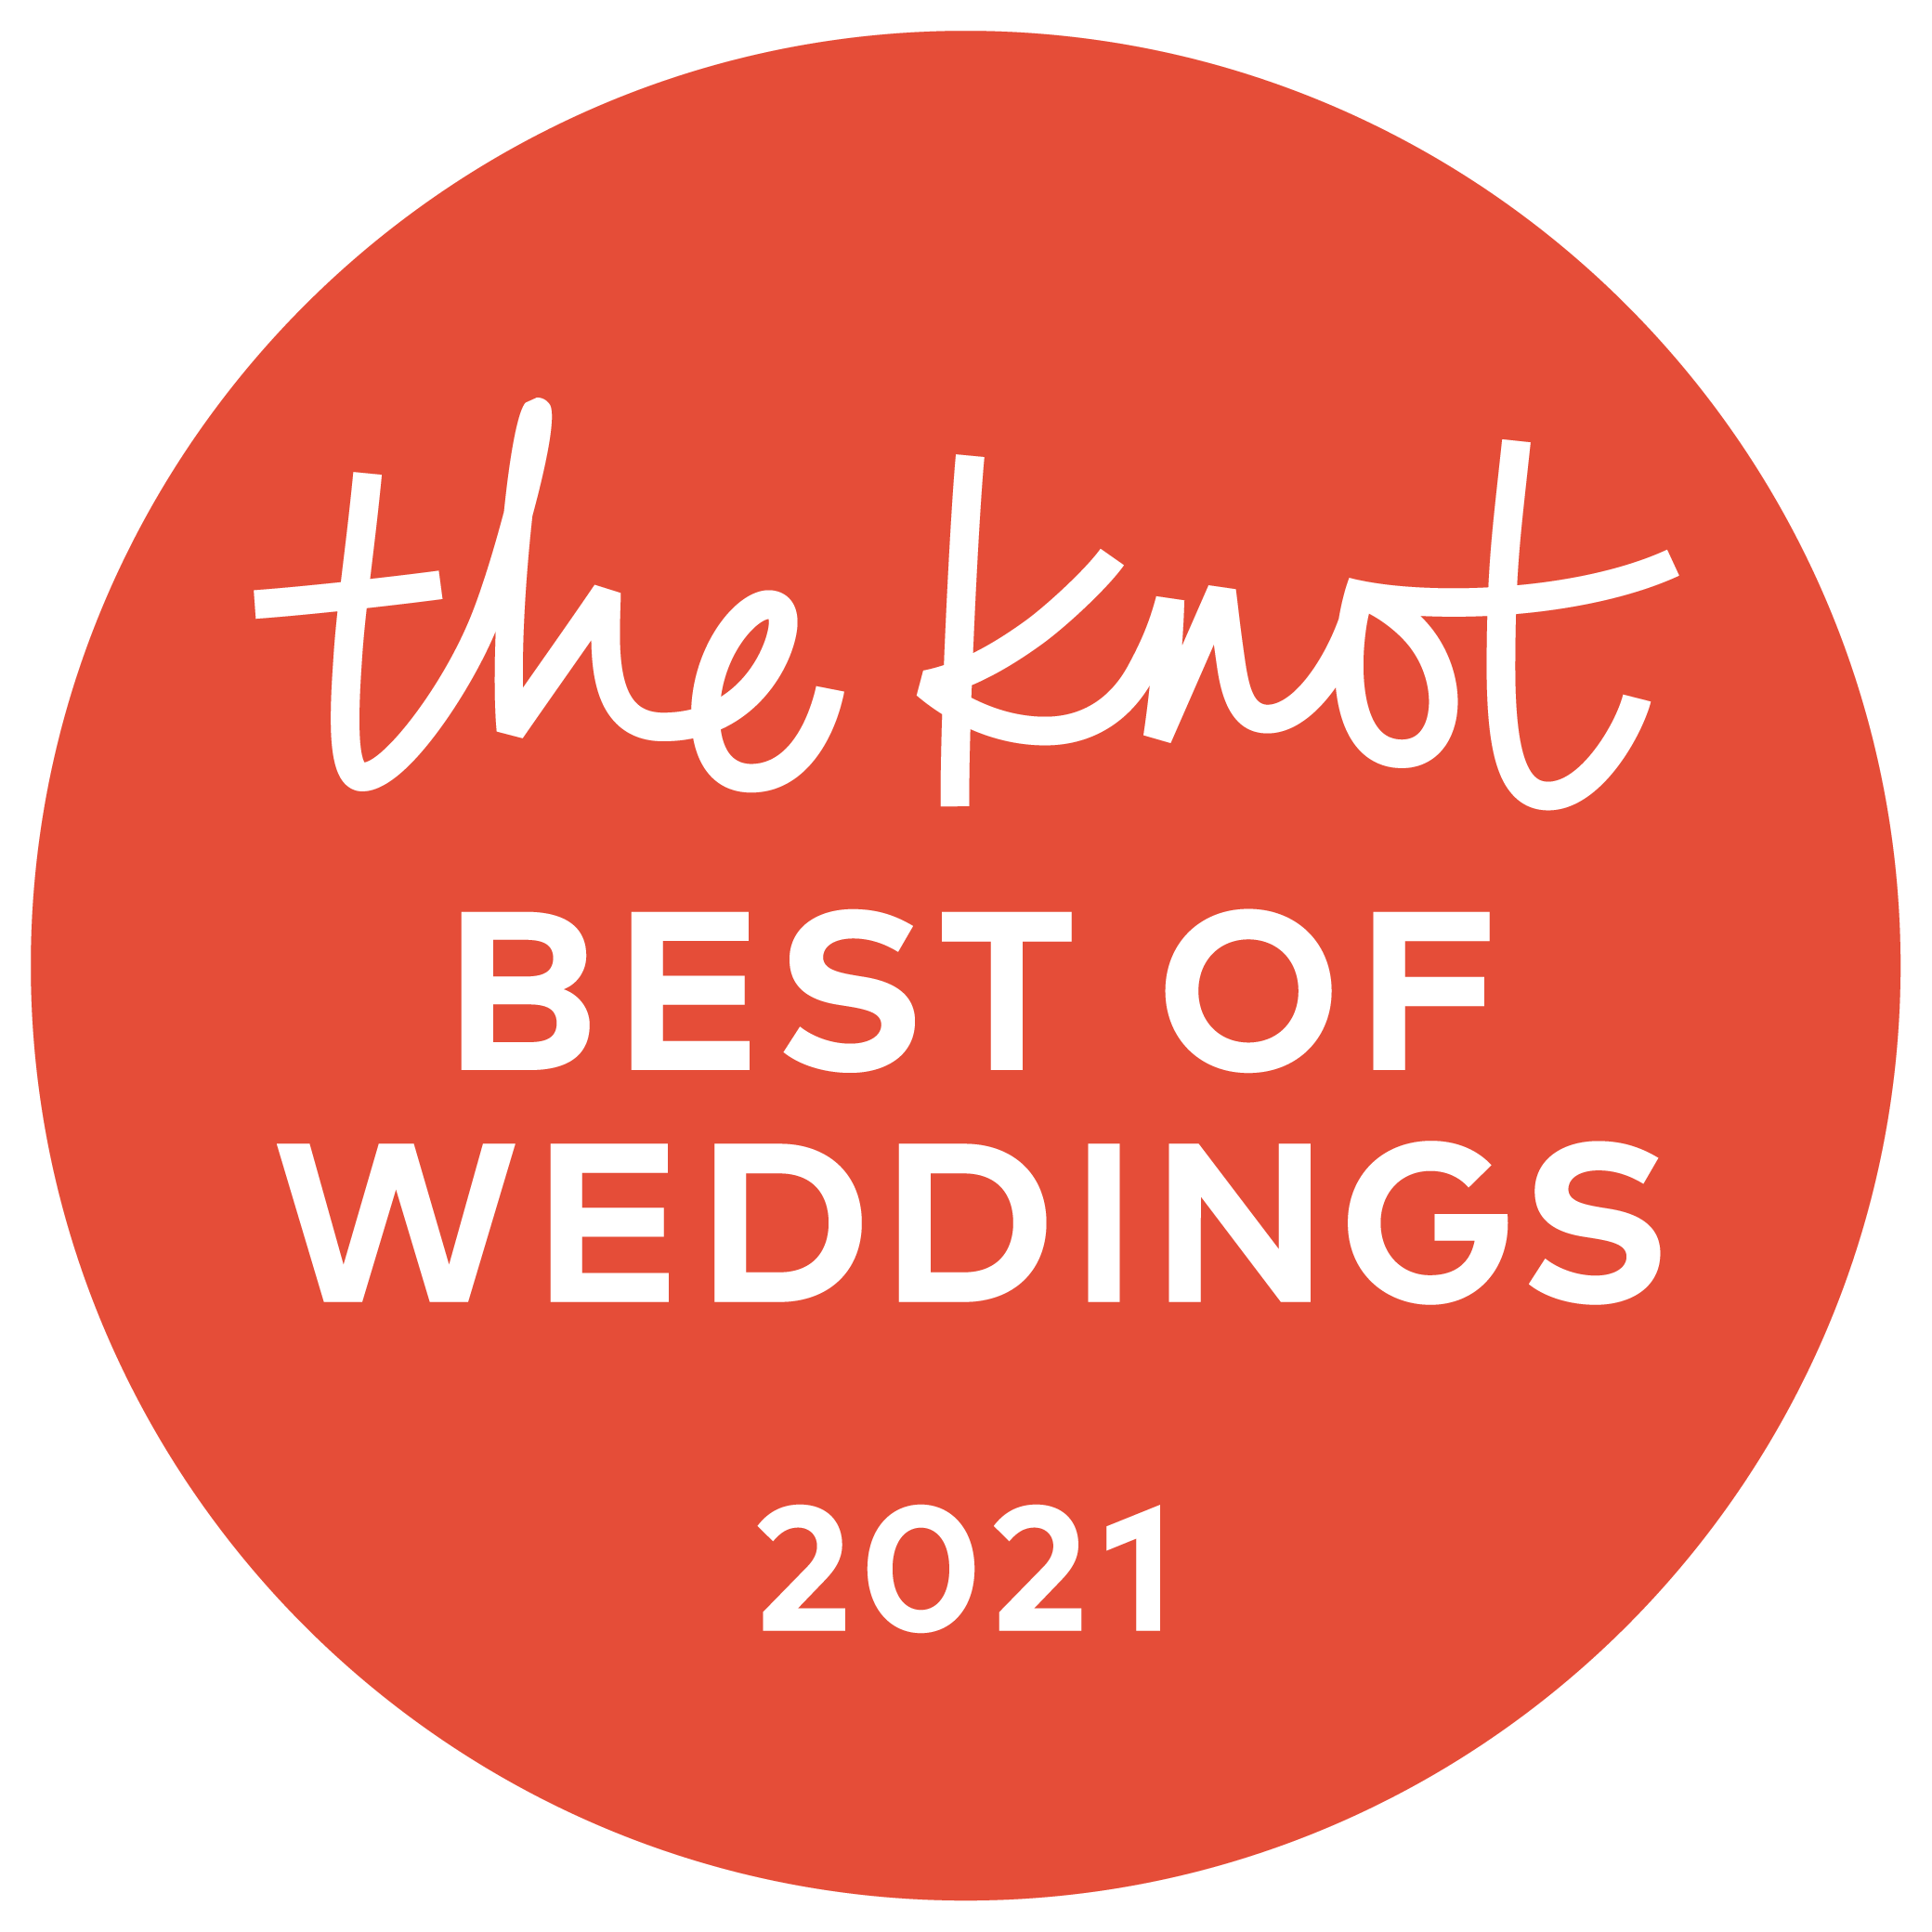 Best of Weddings 2021